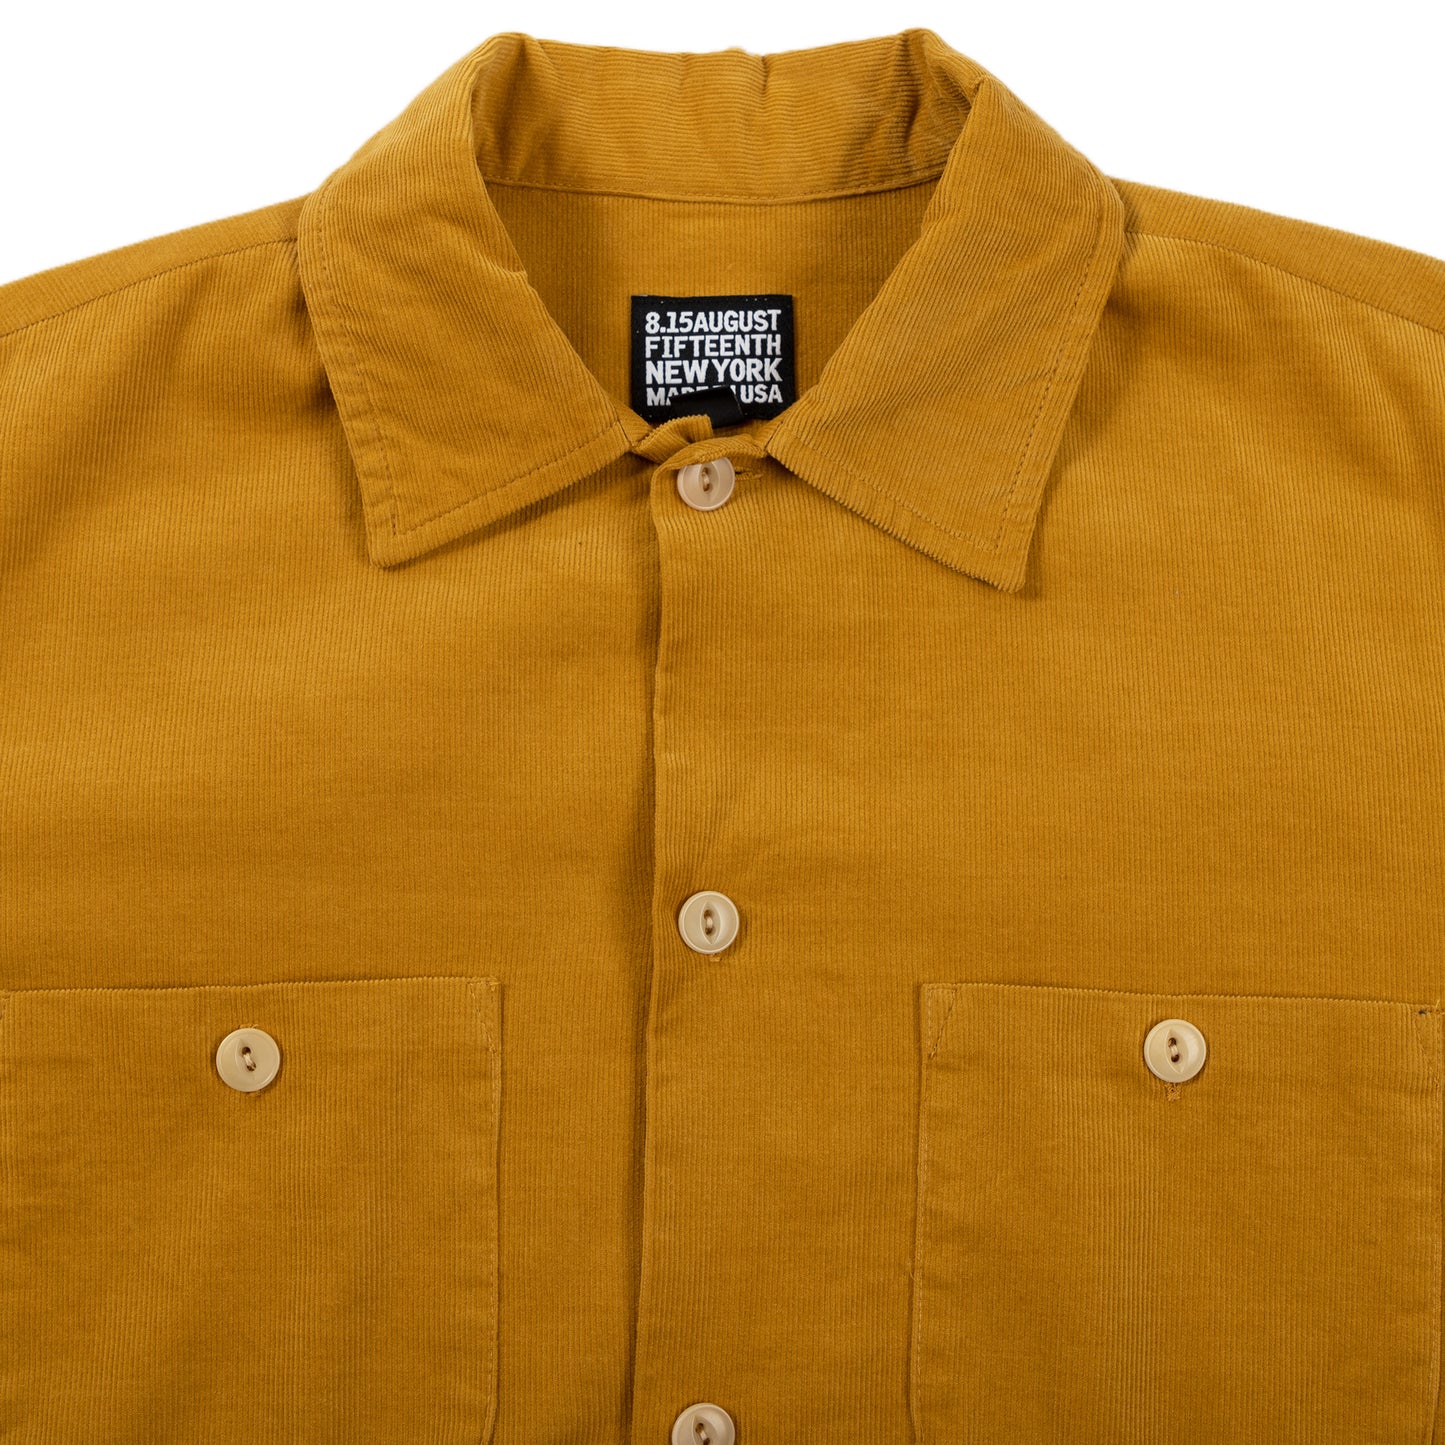 August Fifteenth California Shirt Corduroy Mustard Detail Collar